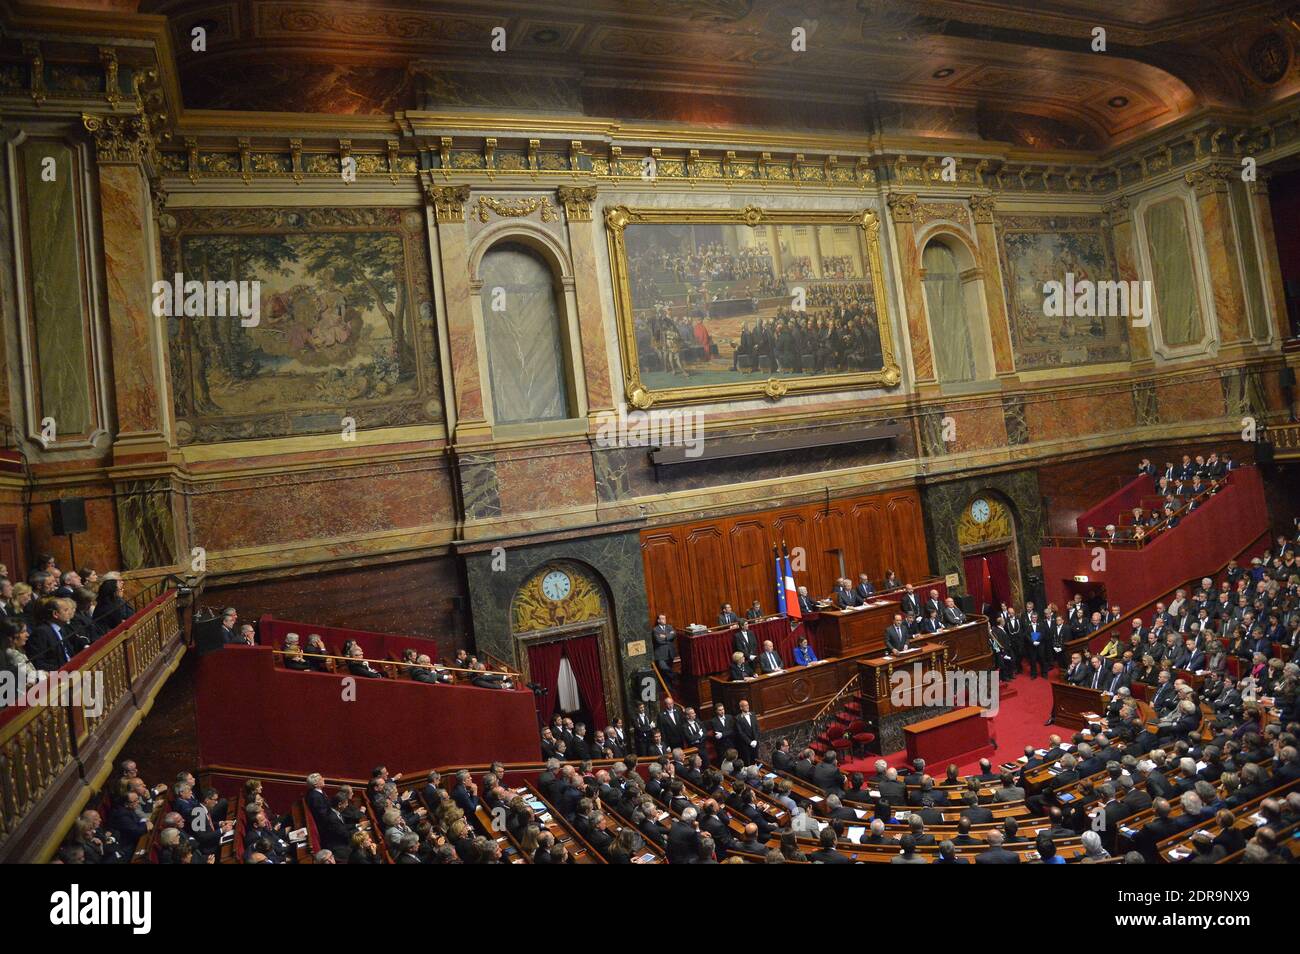 El presidente francés Francois Hollande se dirige a las dos Cámaras del  Parlamento reunidas en el Congreso en el Palacio de Versalles después de  los ataques terroristas del viernes que mataron a